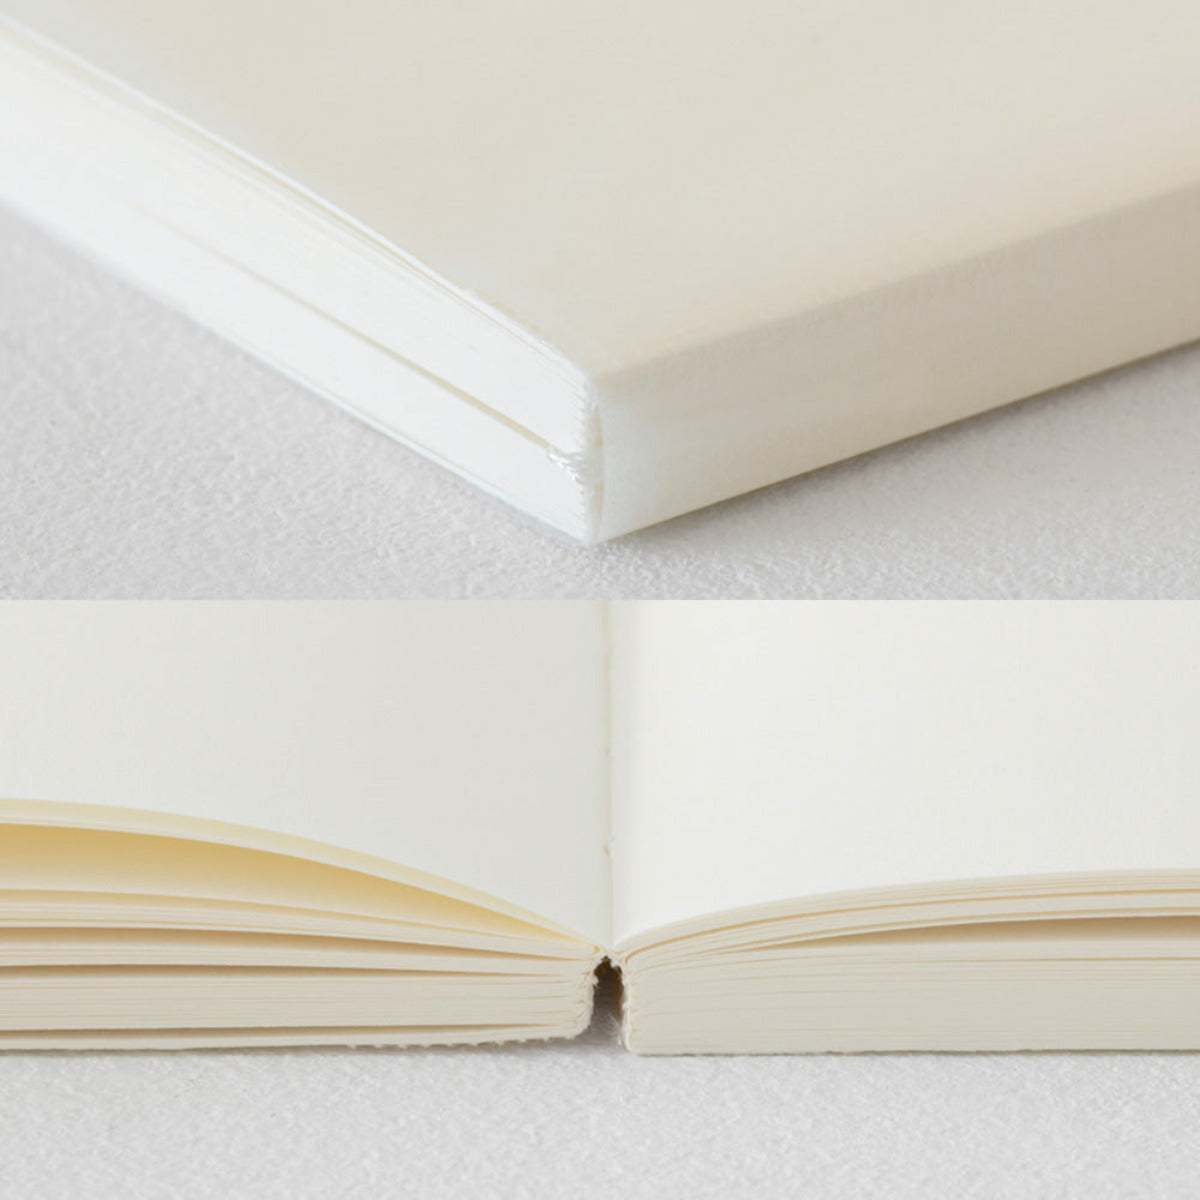 Blank MD Notebook Cotton // To størrelser